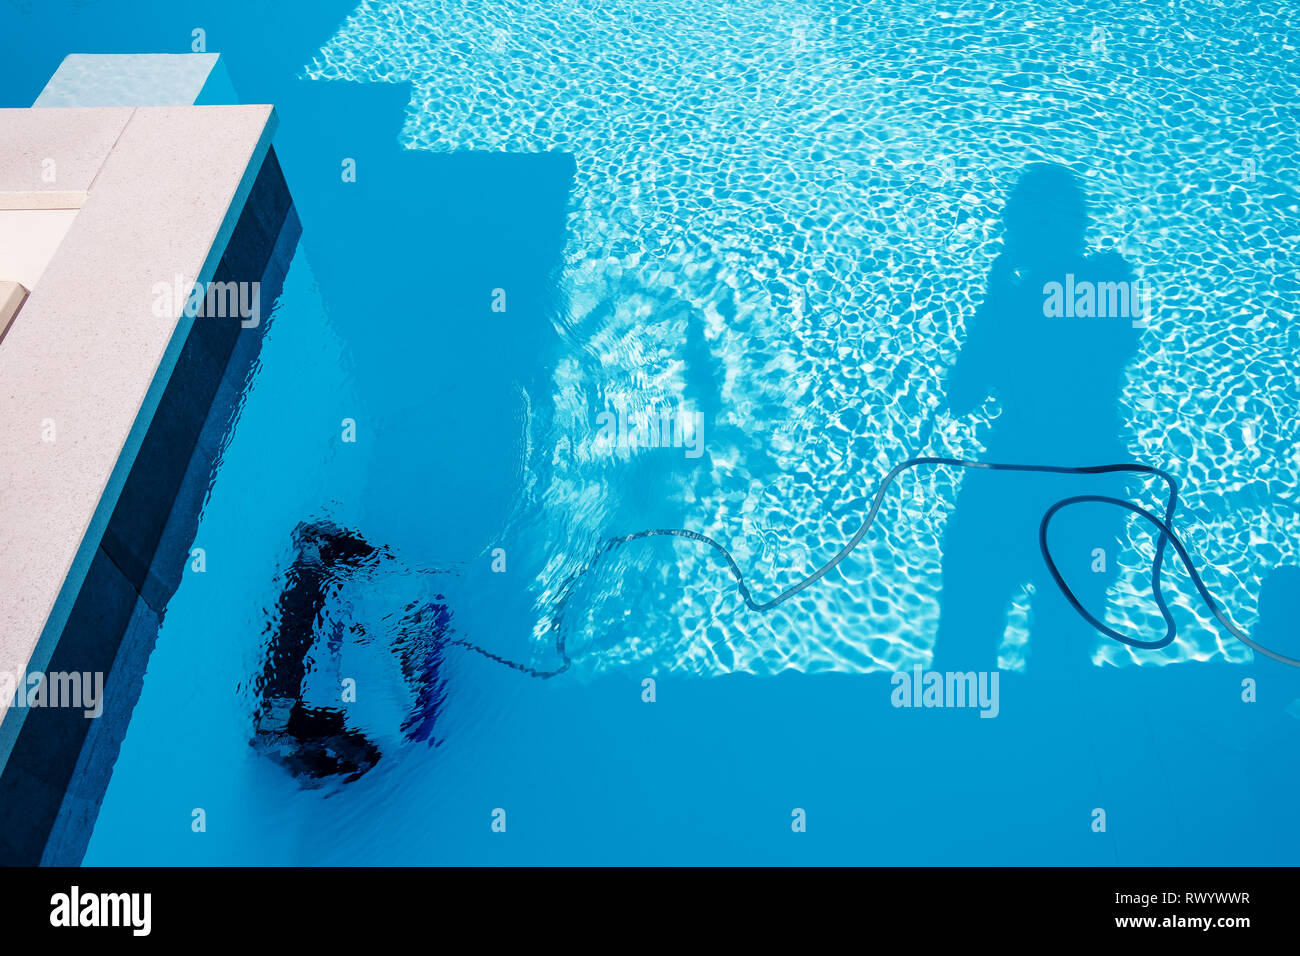 Schwimmbad in der italienischen Resort Lido. Roboter Staubsauger und  Silhouette Stockfotografie - Alamy